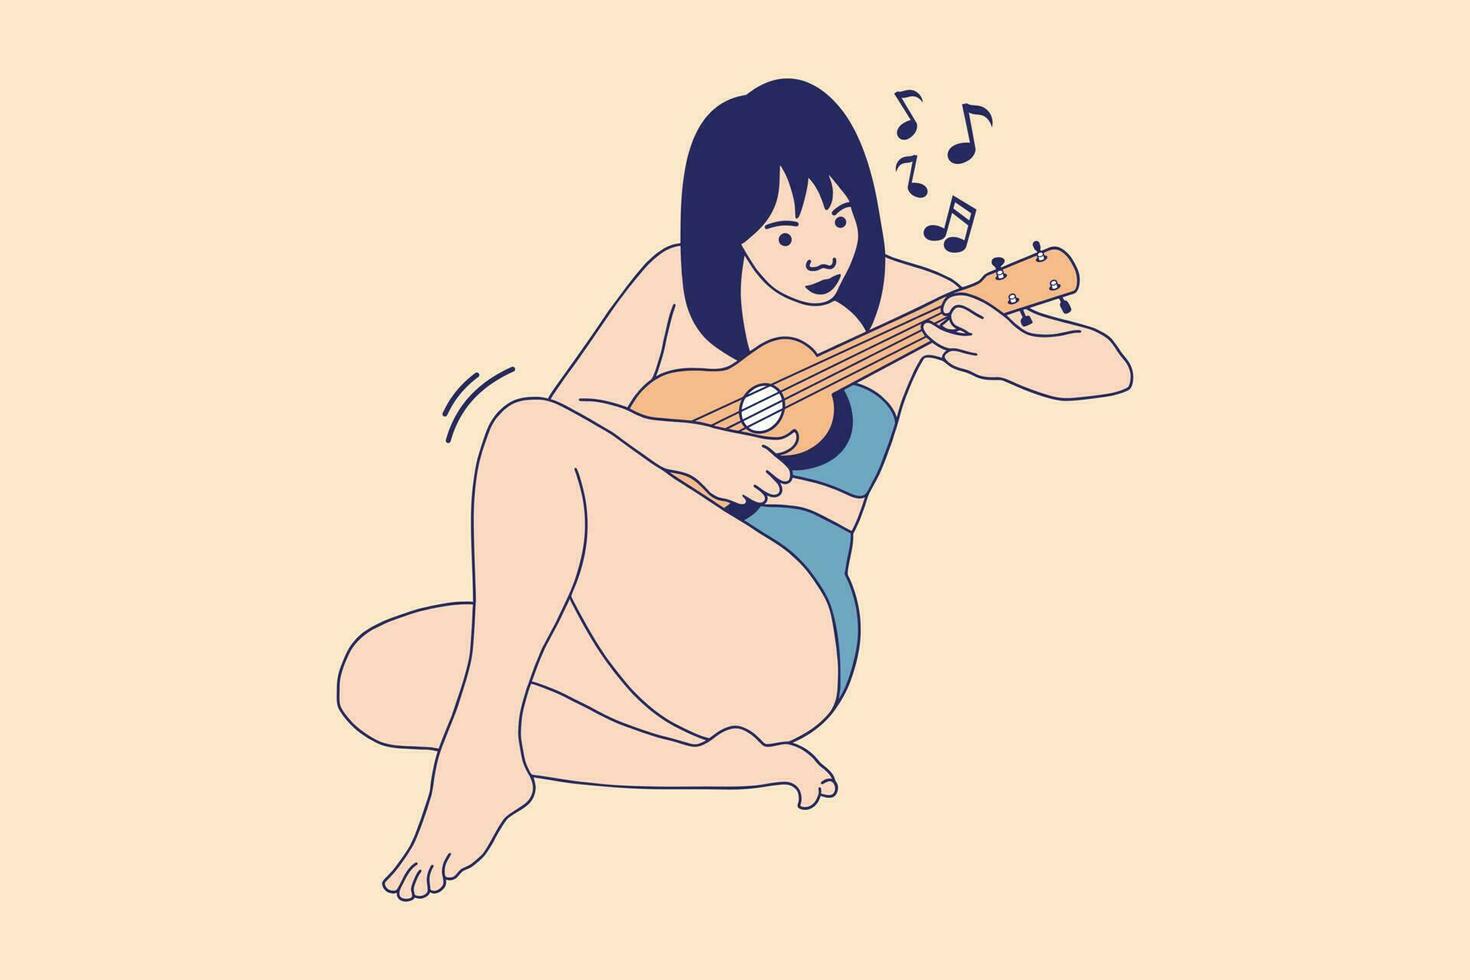 ilustrações de mulheres bonitas tocando ukulele na praia no verão vetor